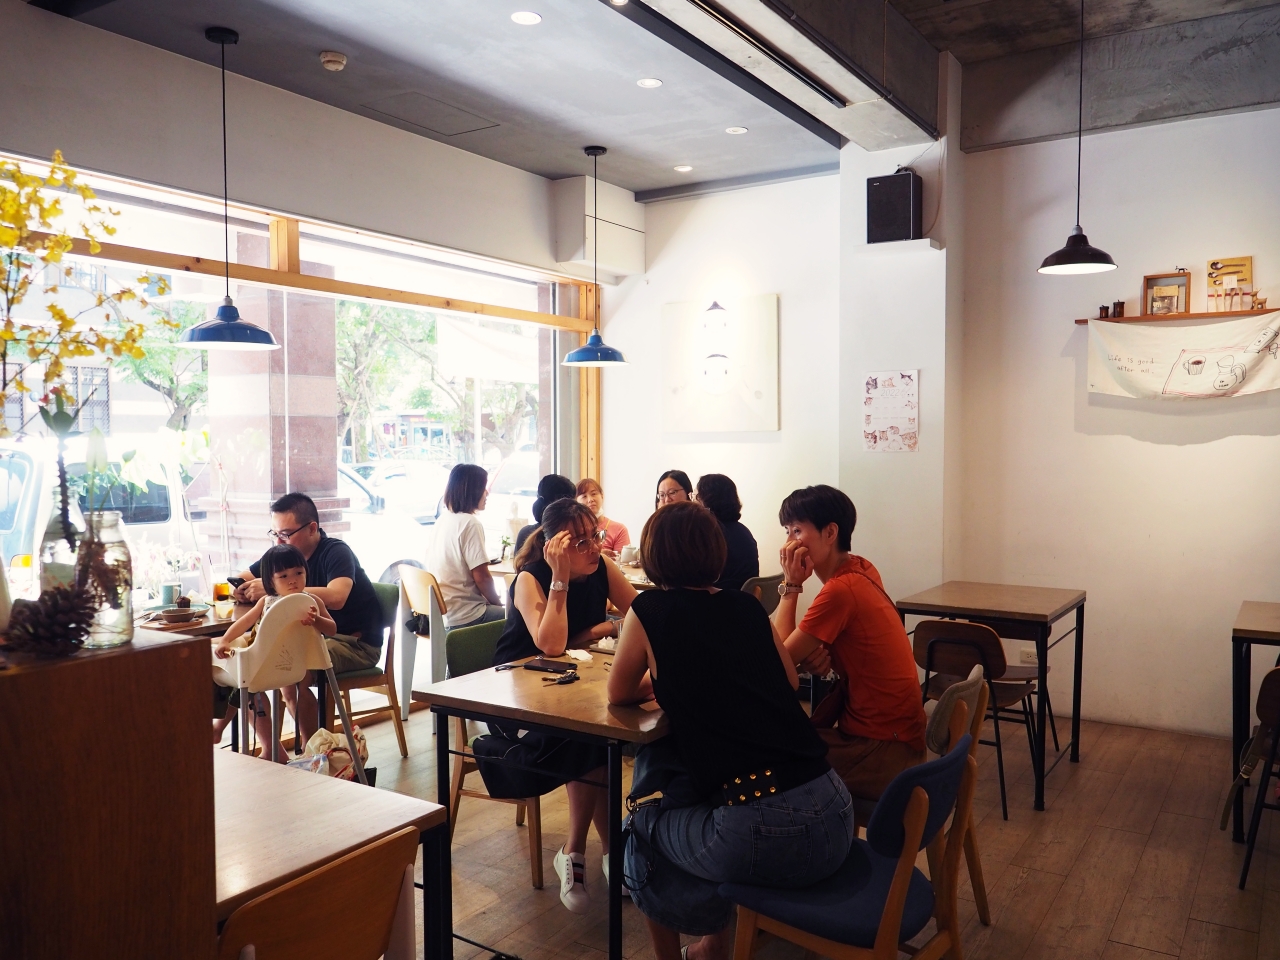 宜蘭市咖啡店｜夏至咖啡， 限量的簡餐料理和手作甜點   日系雜貨風格秒到日本 @台客X文青的夫婦日常